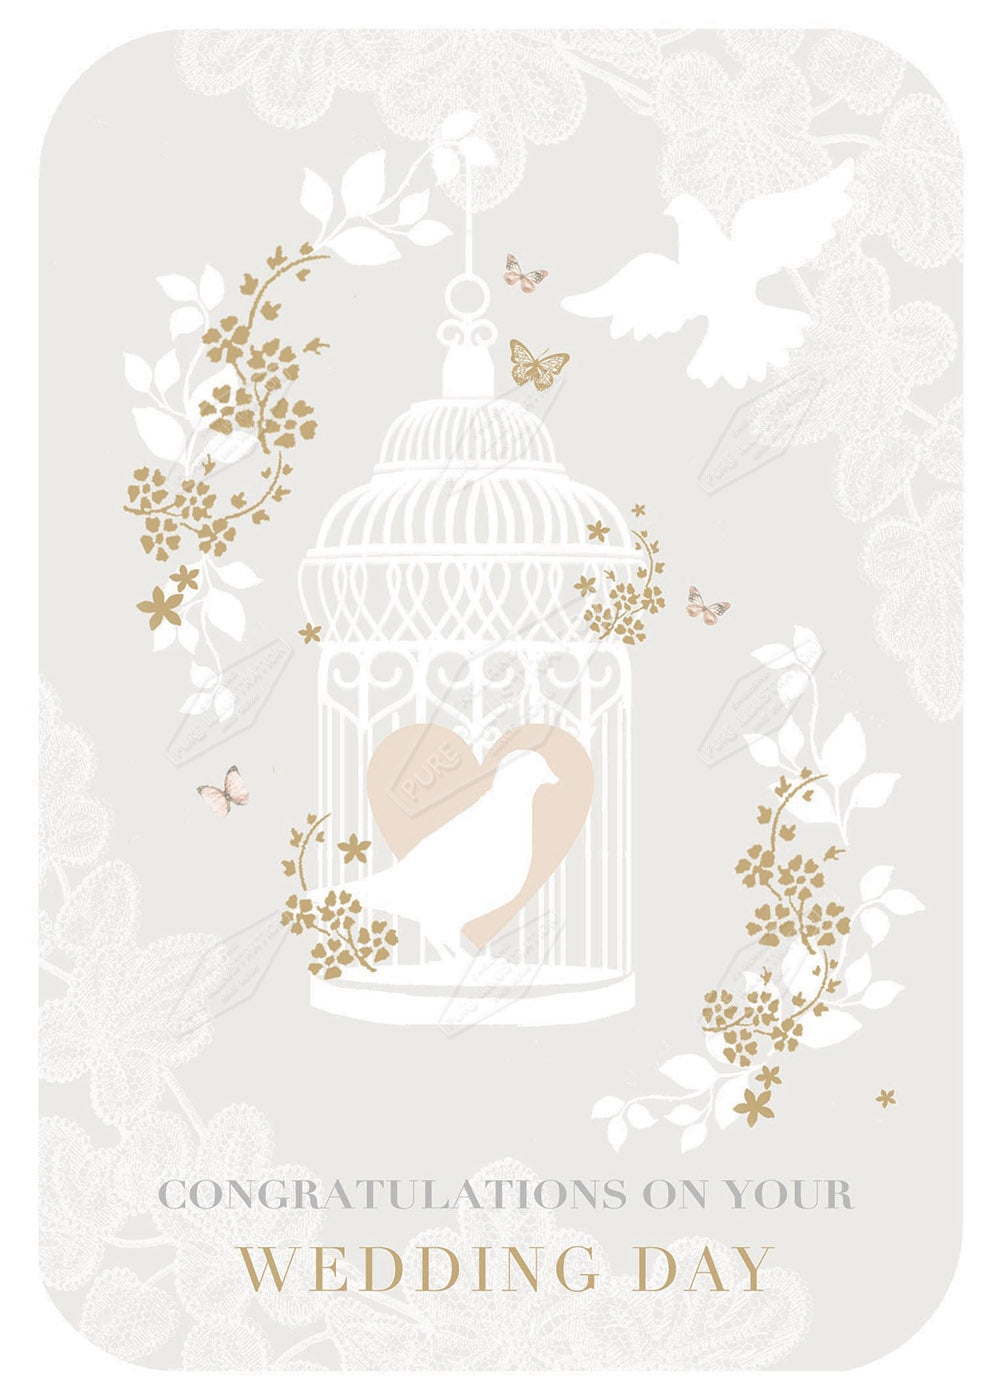 00027958DEV - Deva Evans is represented by Pure Art Licensing Agency - Wedding Greeting Card Design